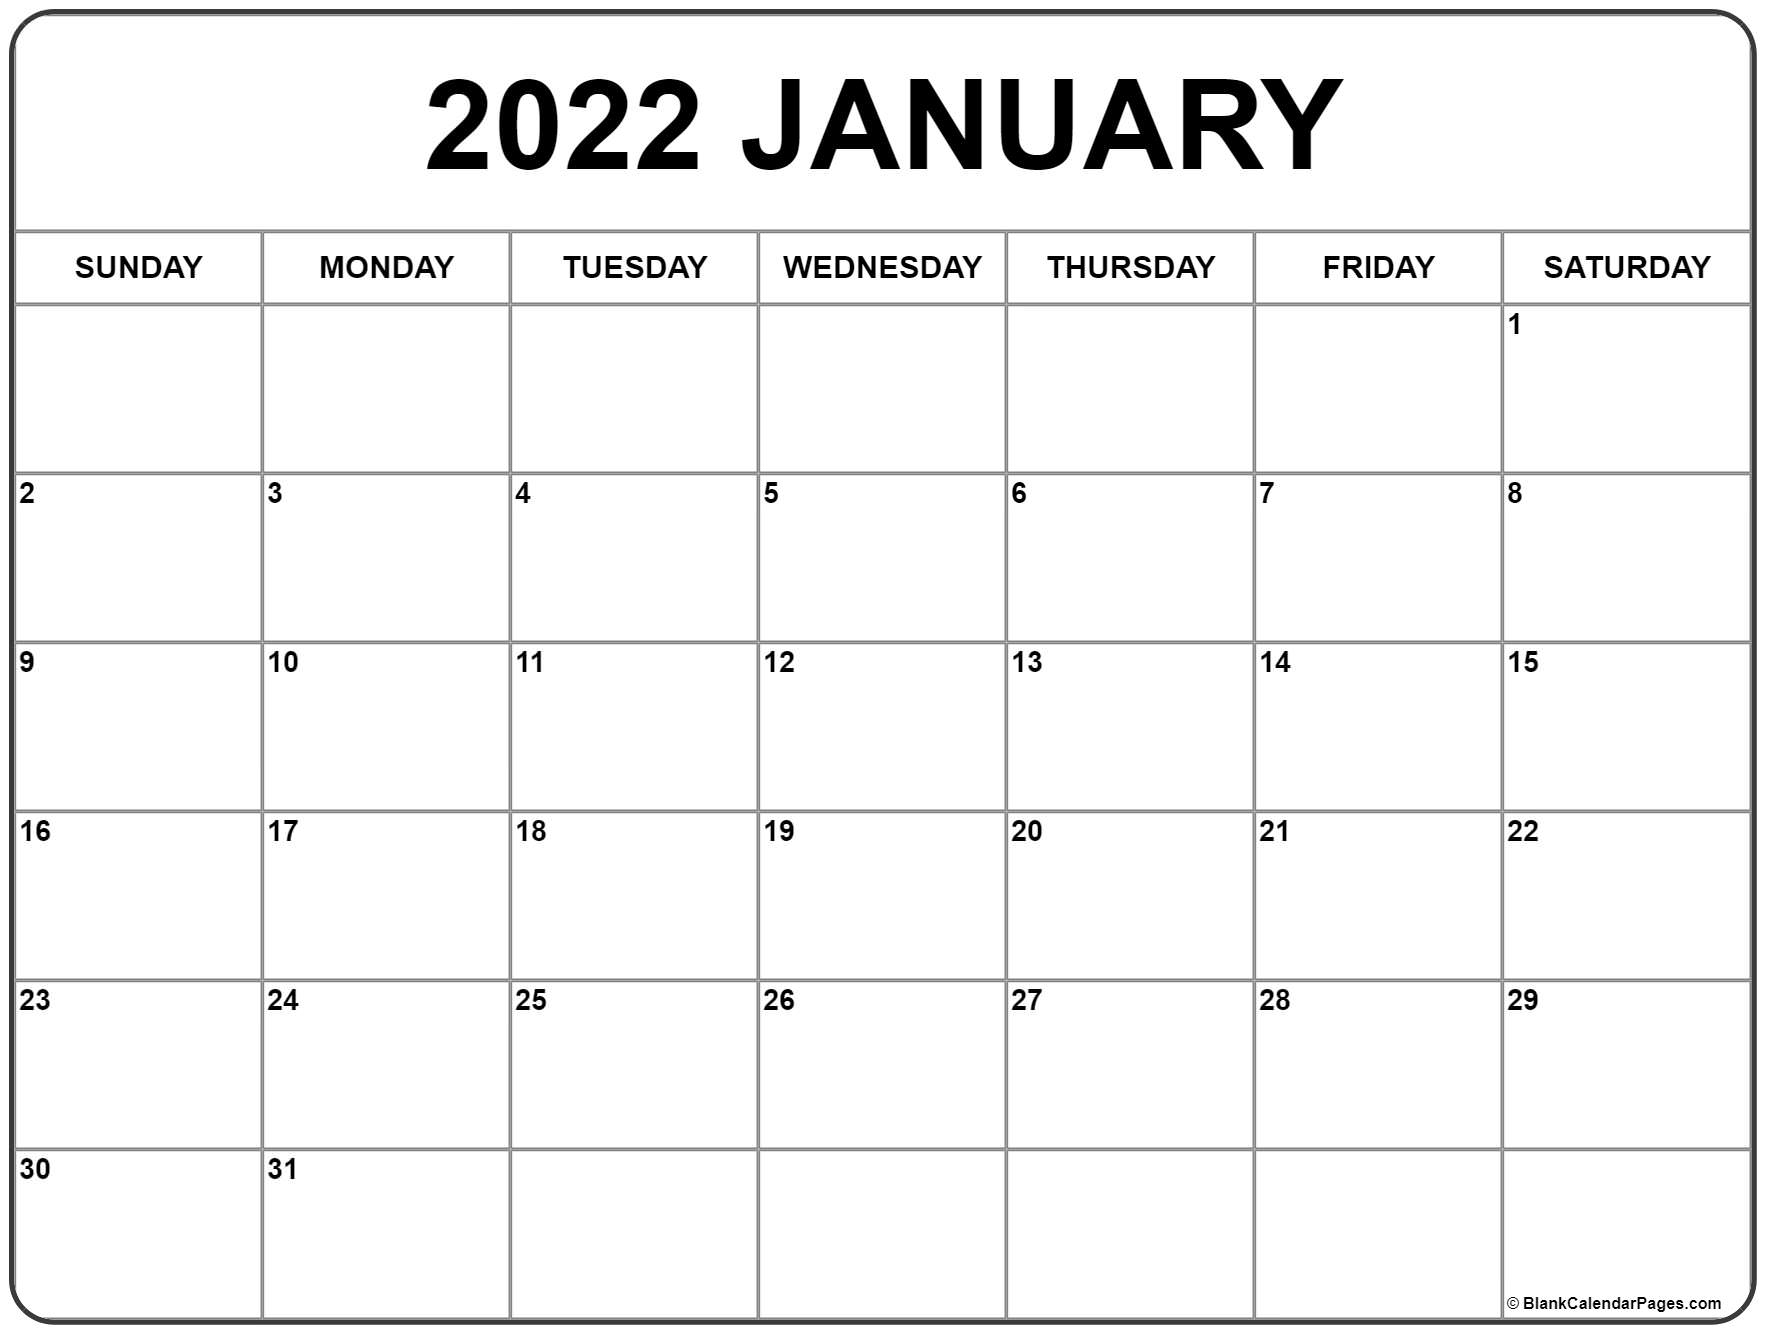 Get Las Vegas Calendar February 2022